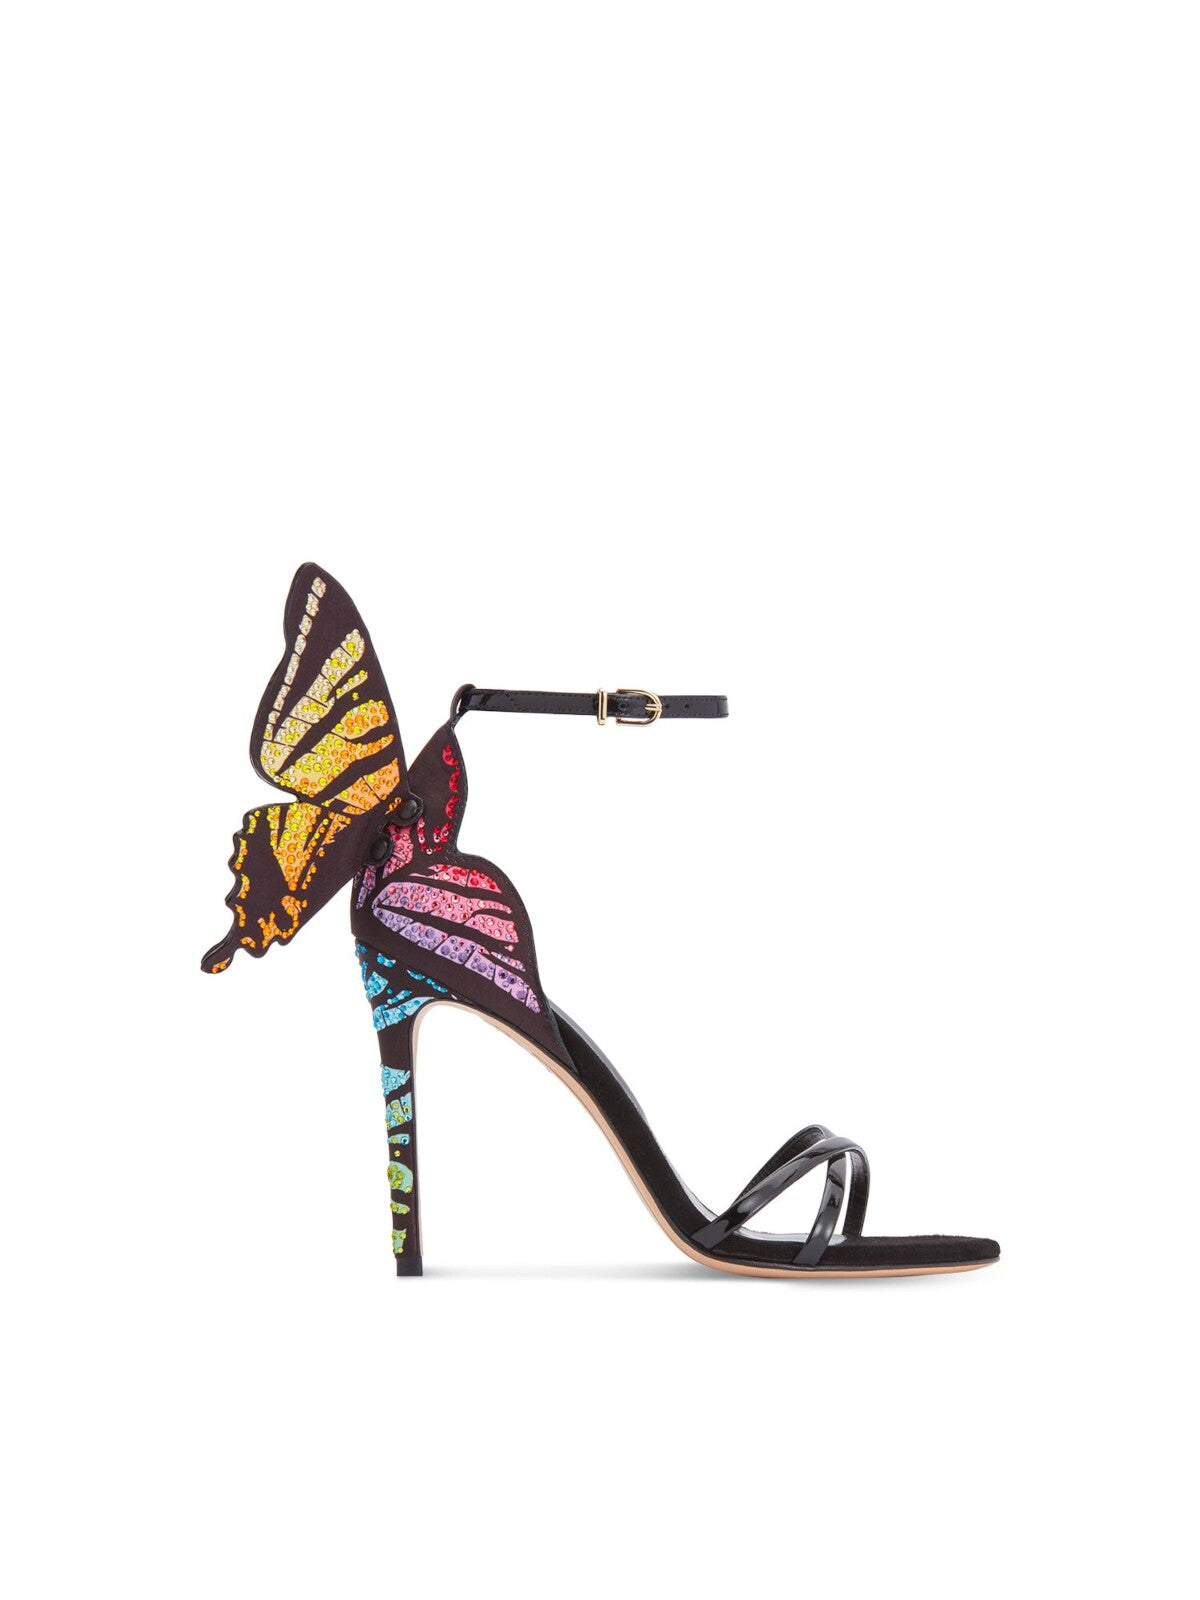 SOPHIA WEBSTER Womens Black Butterfly Adjustable Chiara Open Toe Stiletto Buckle Dress Heeled Sandal 39